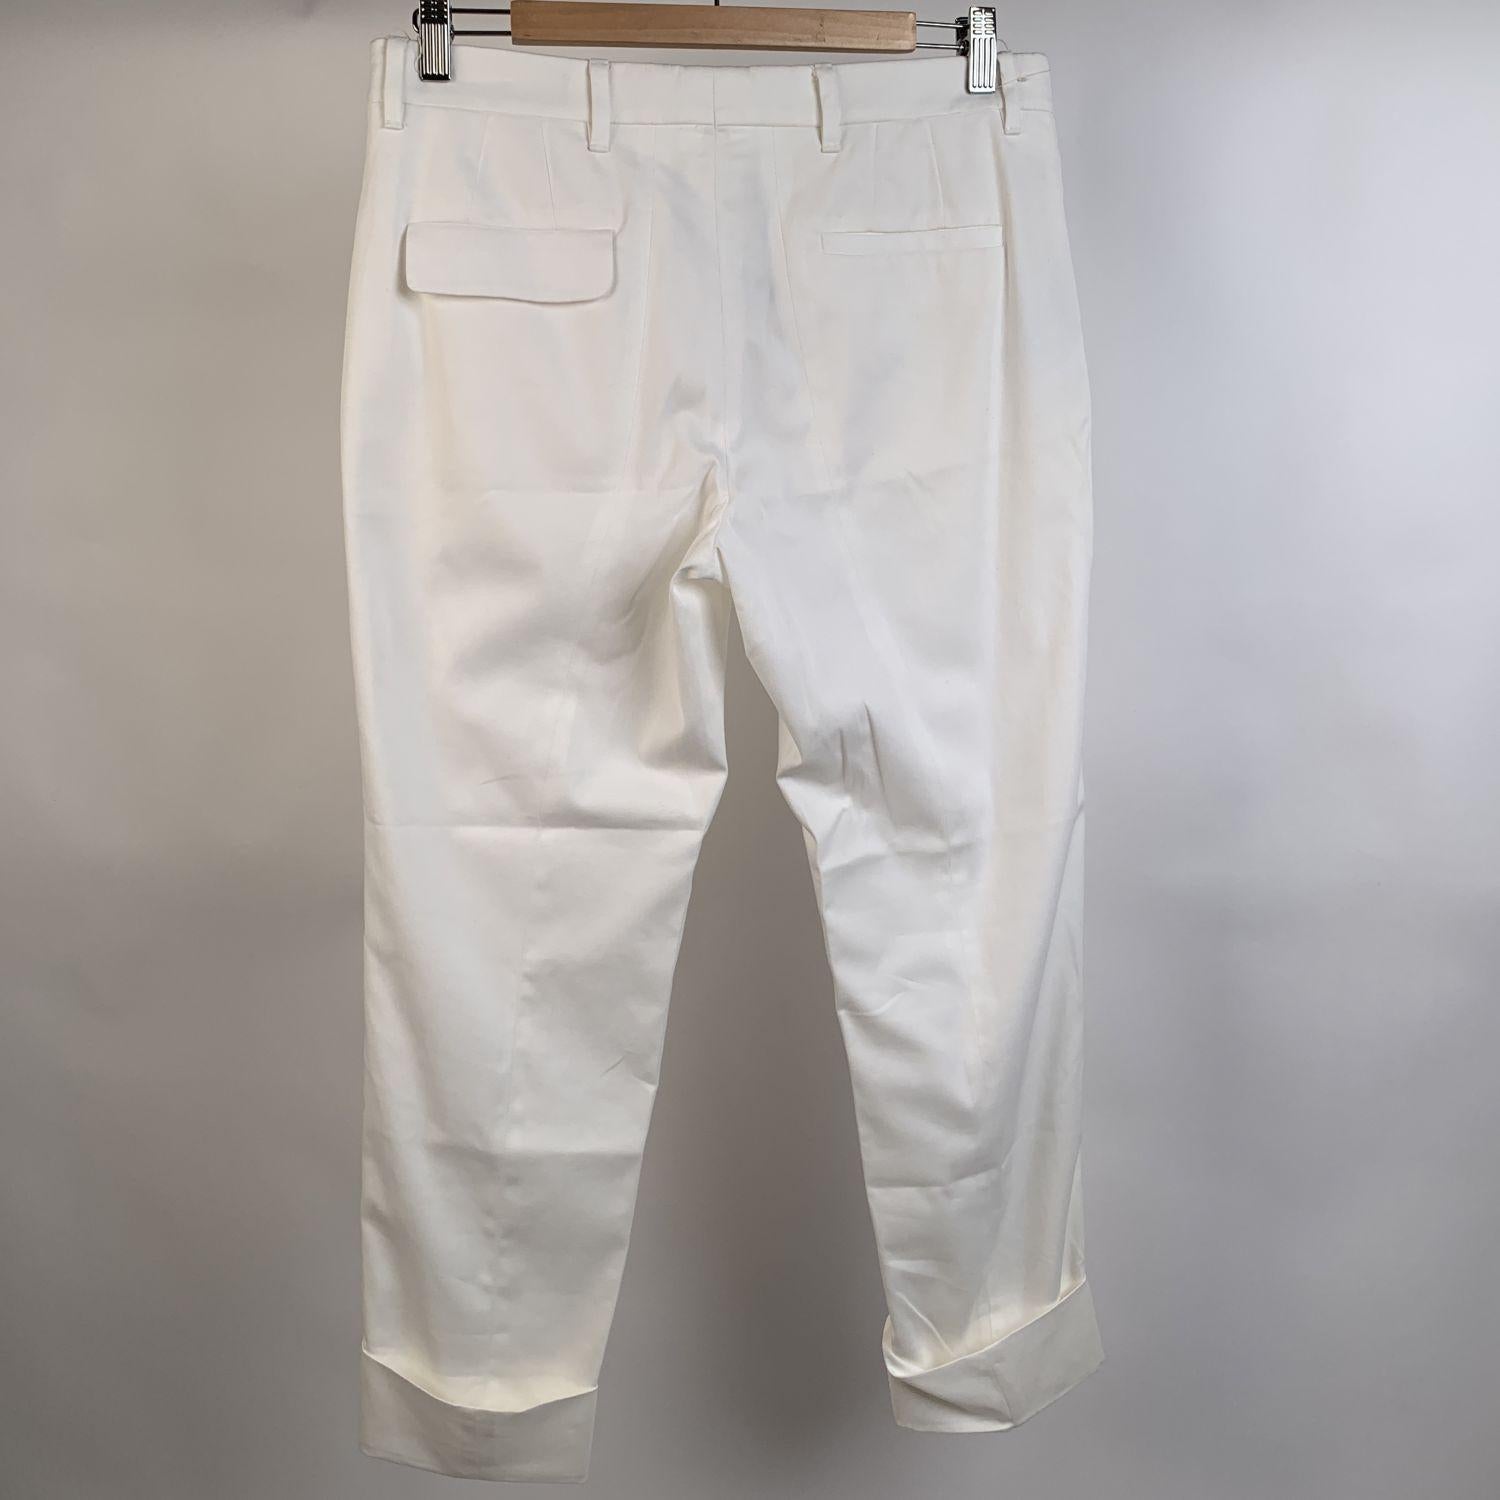 Gray Miu Miu White Stretch Cotton Trousers Pants Size 40